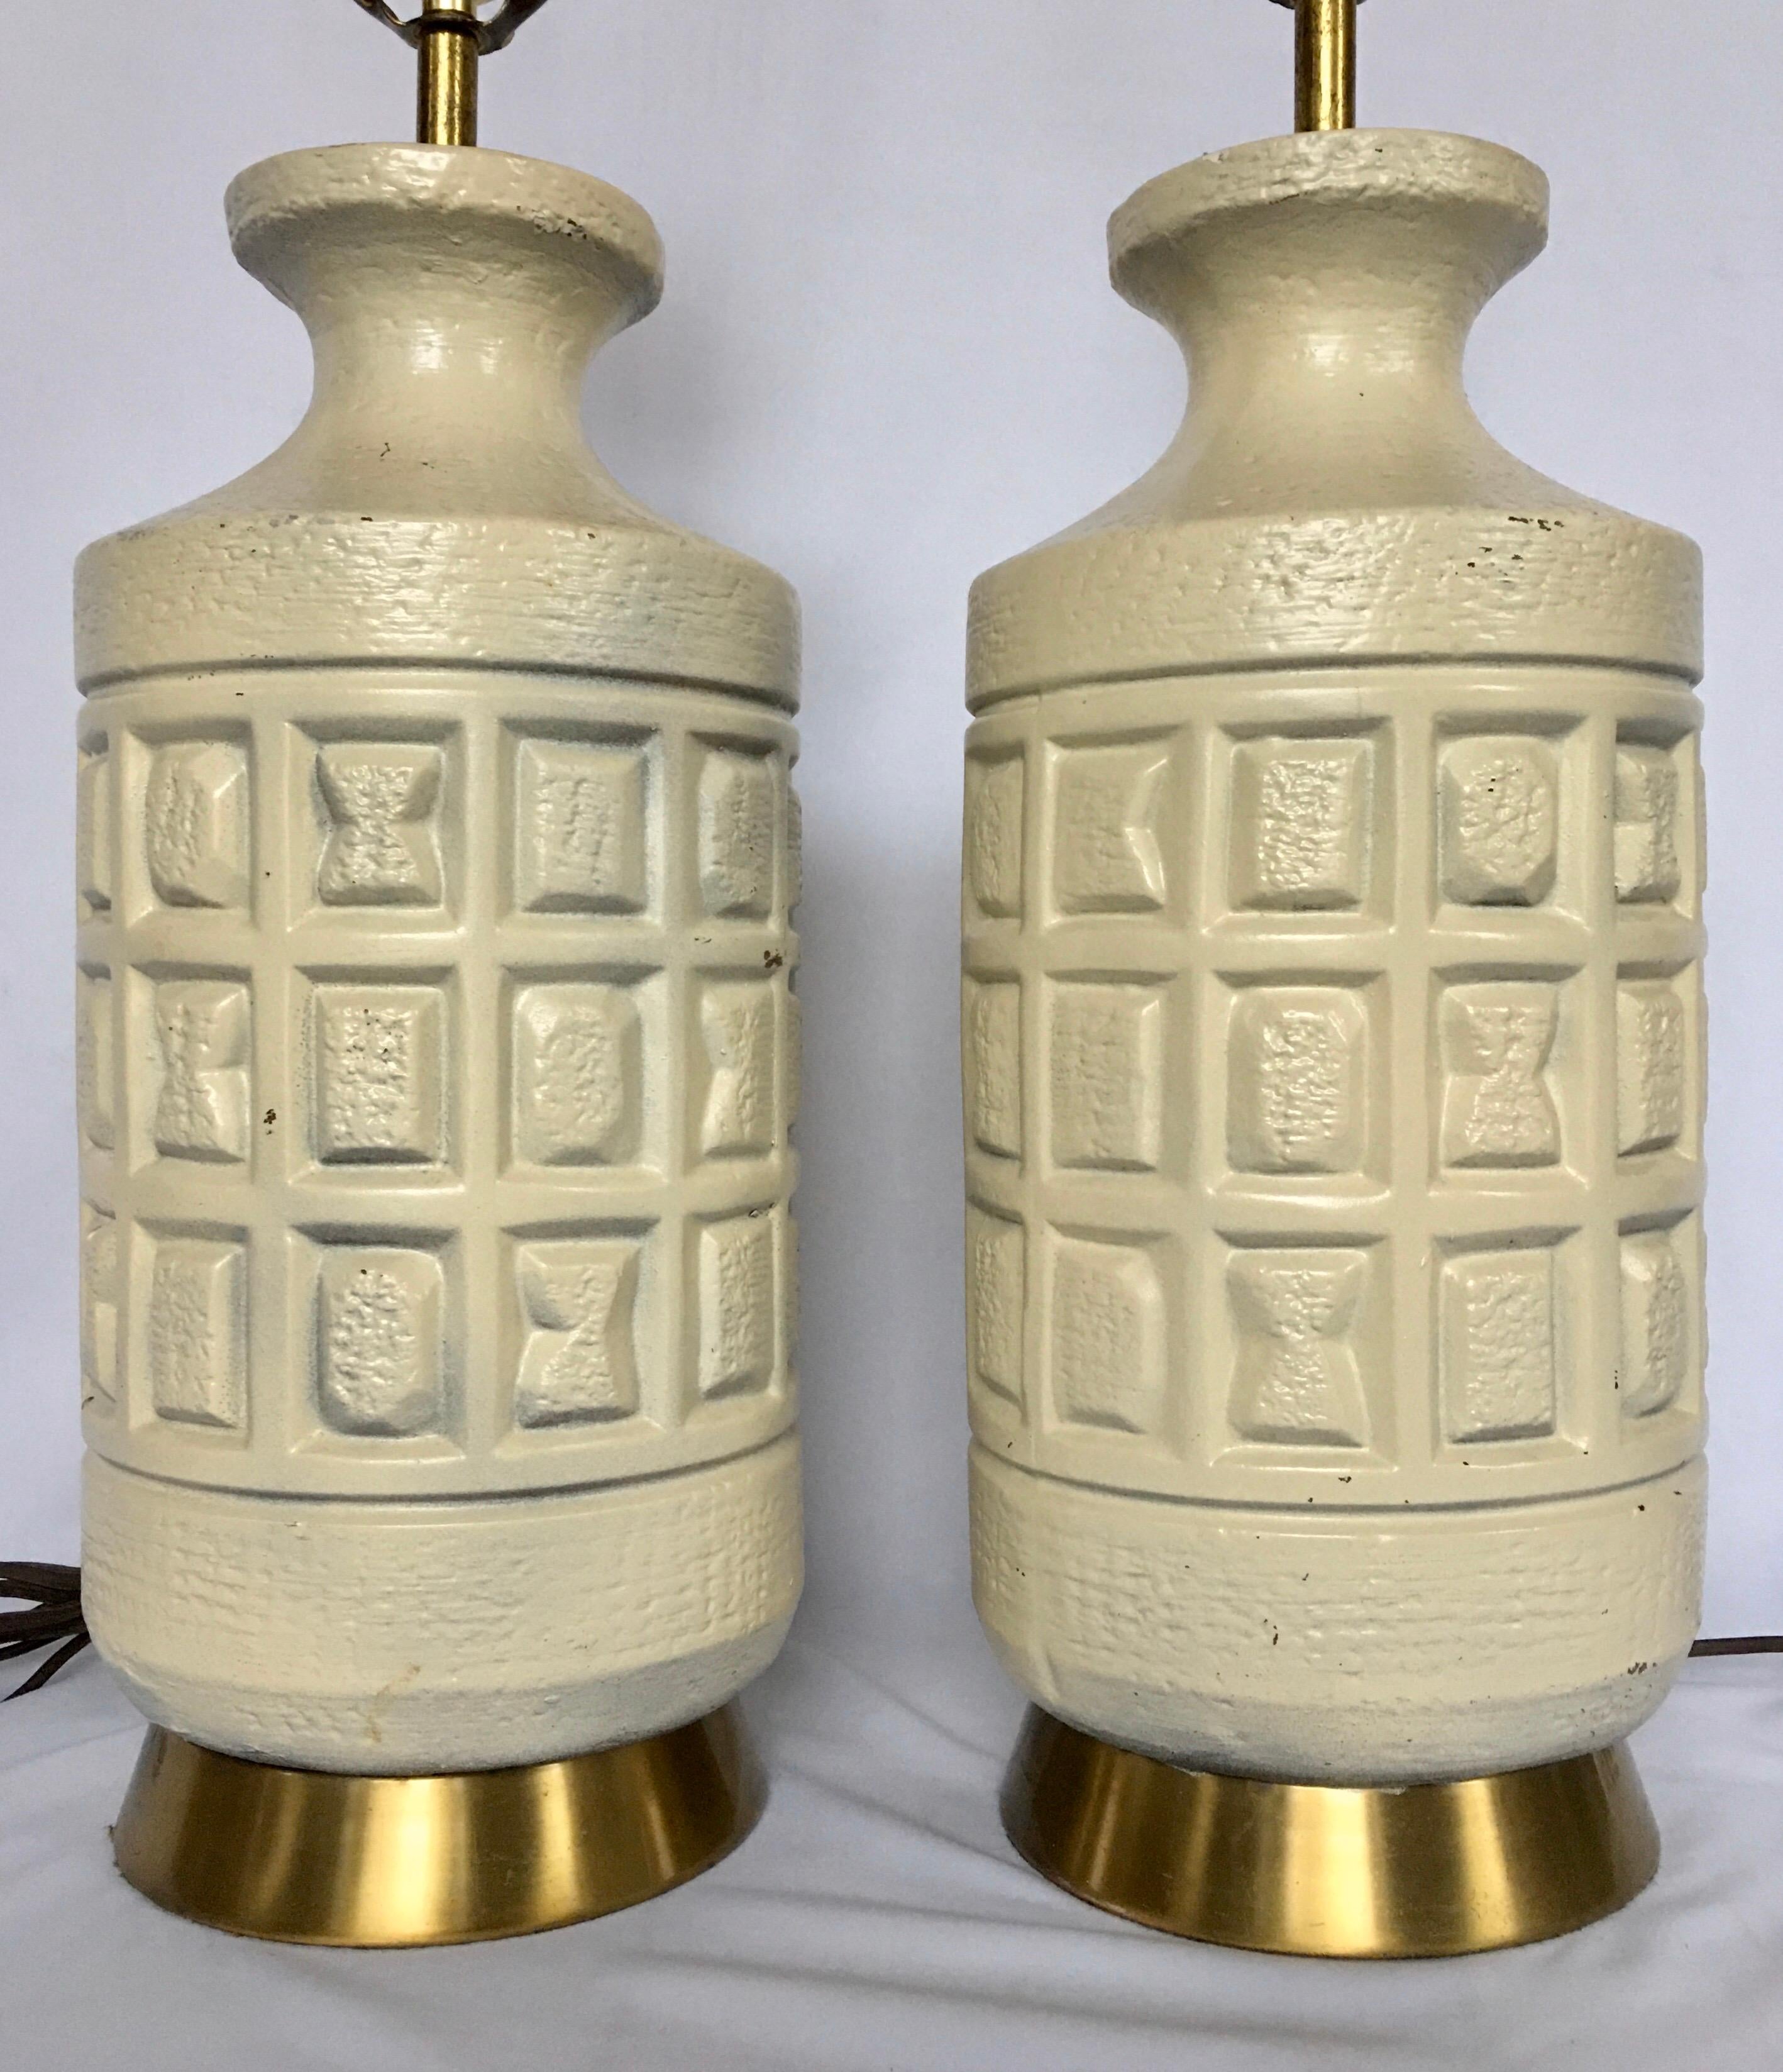 Lampes de table en poterie Brutalist de style moderne du milieu du siècle. Ces lampes de table de forme cubiste présentent des bases sculpturales en poterie crème mate imprimées de formes géométriques montées sur des socles en laiton. 

Mesures :